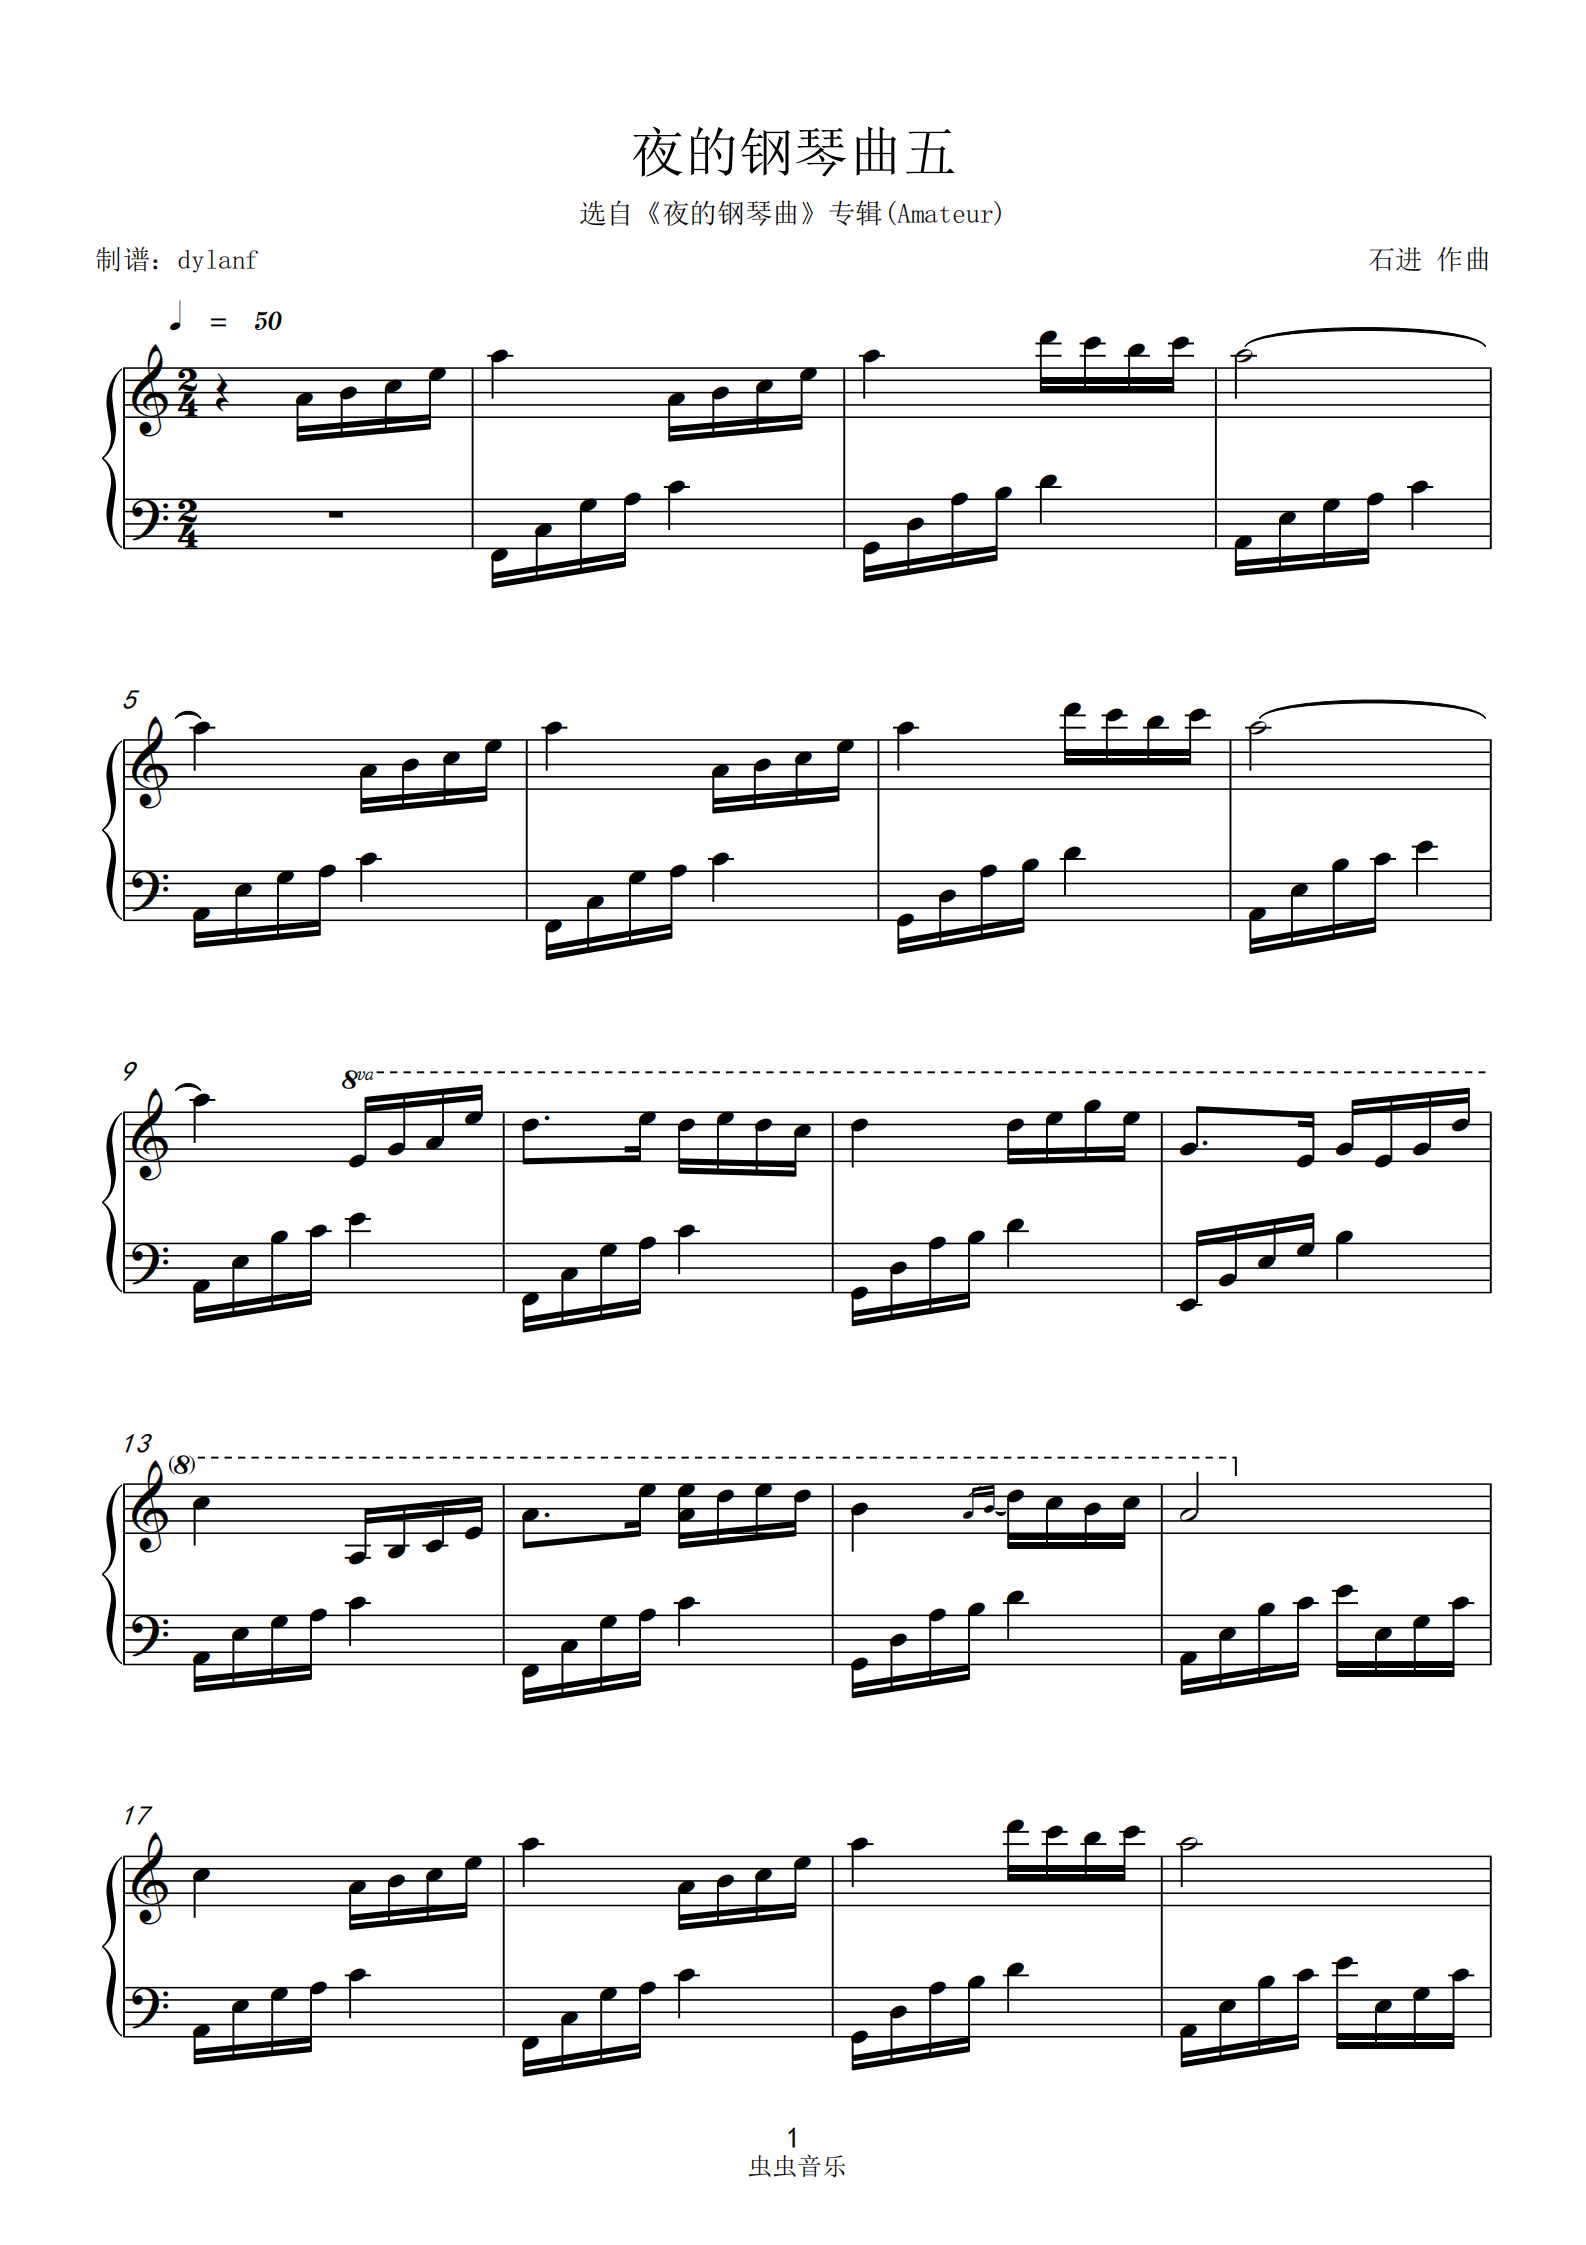 夜的钢琴曲5钢琴谱带指法(夜的钢琴曲5钢琴谱带指法完整版)